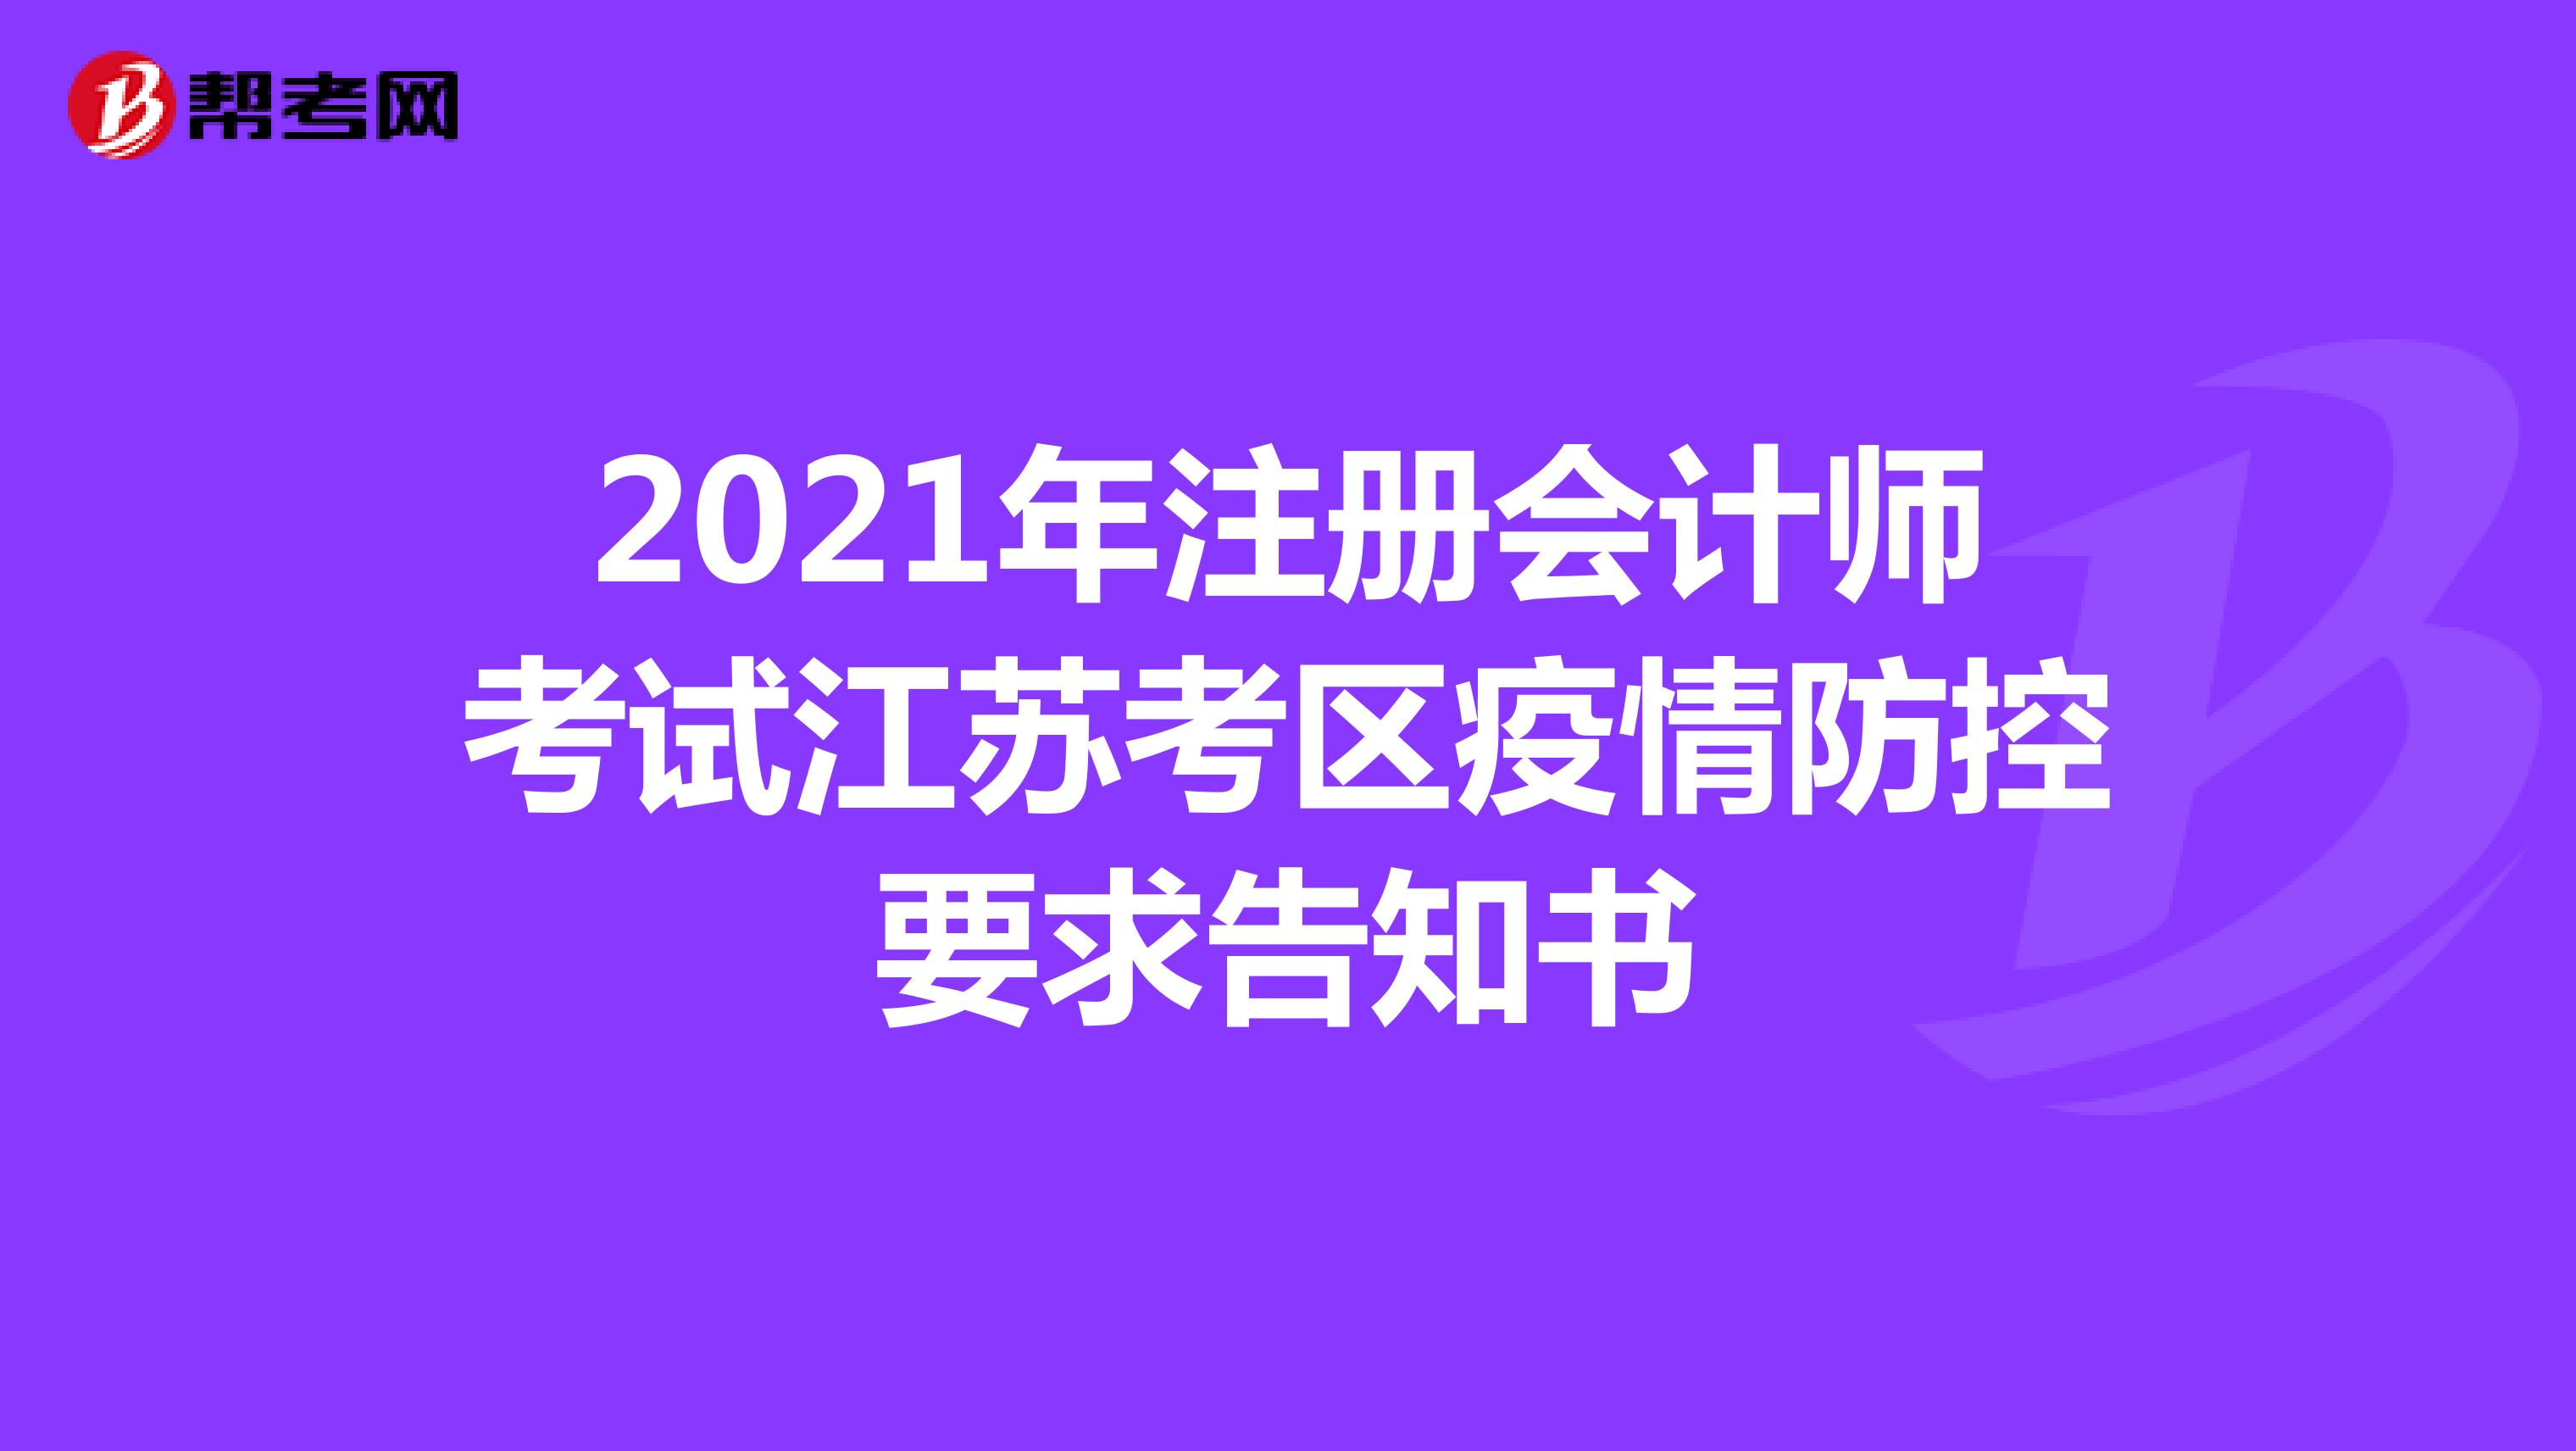 2021年注册会计师考试江苏考区疫情防控要求告知书